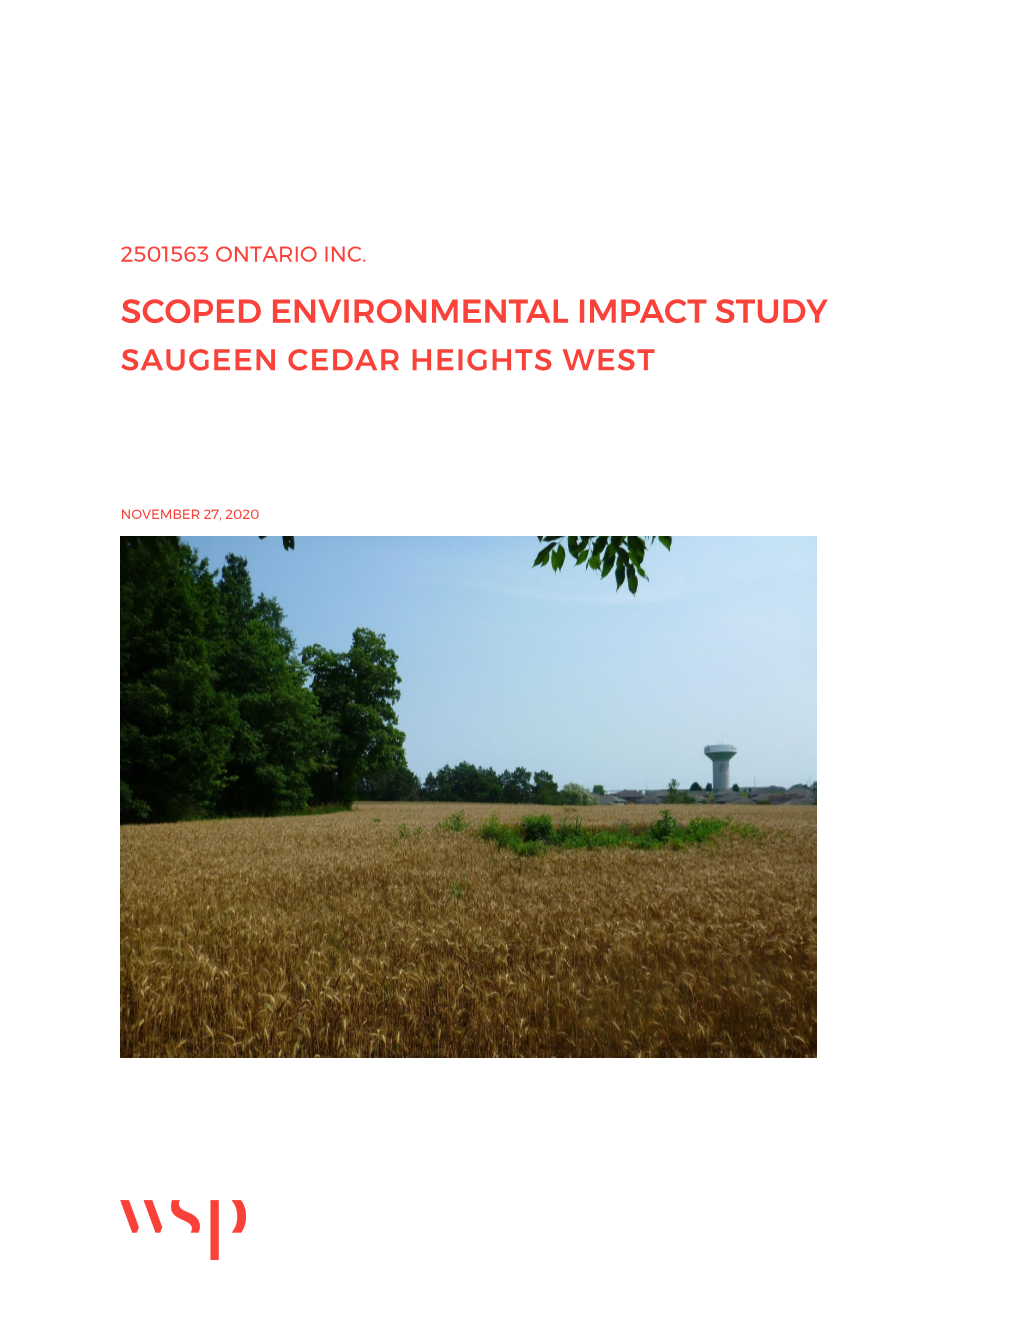 Environmental Impact Study Saugeen Cedar Heights West